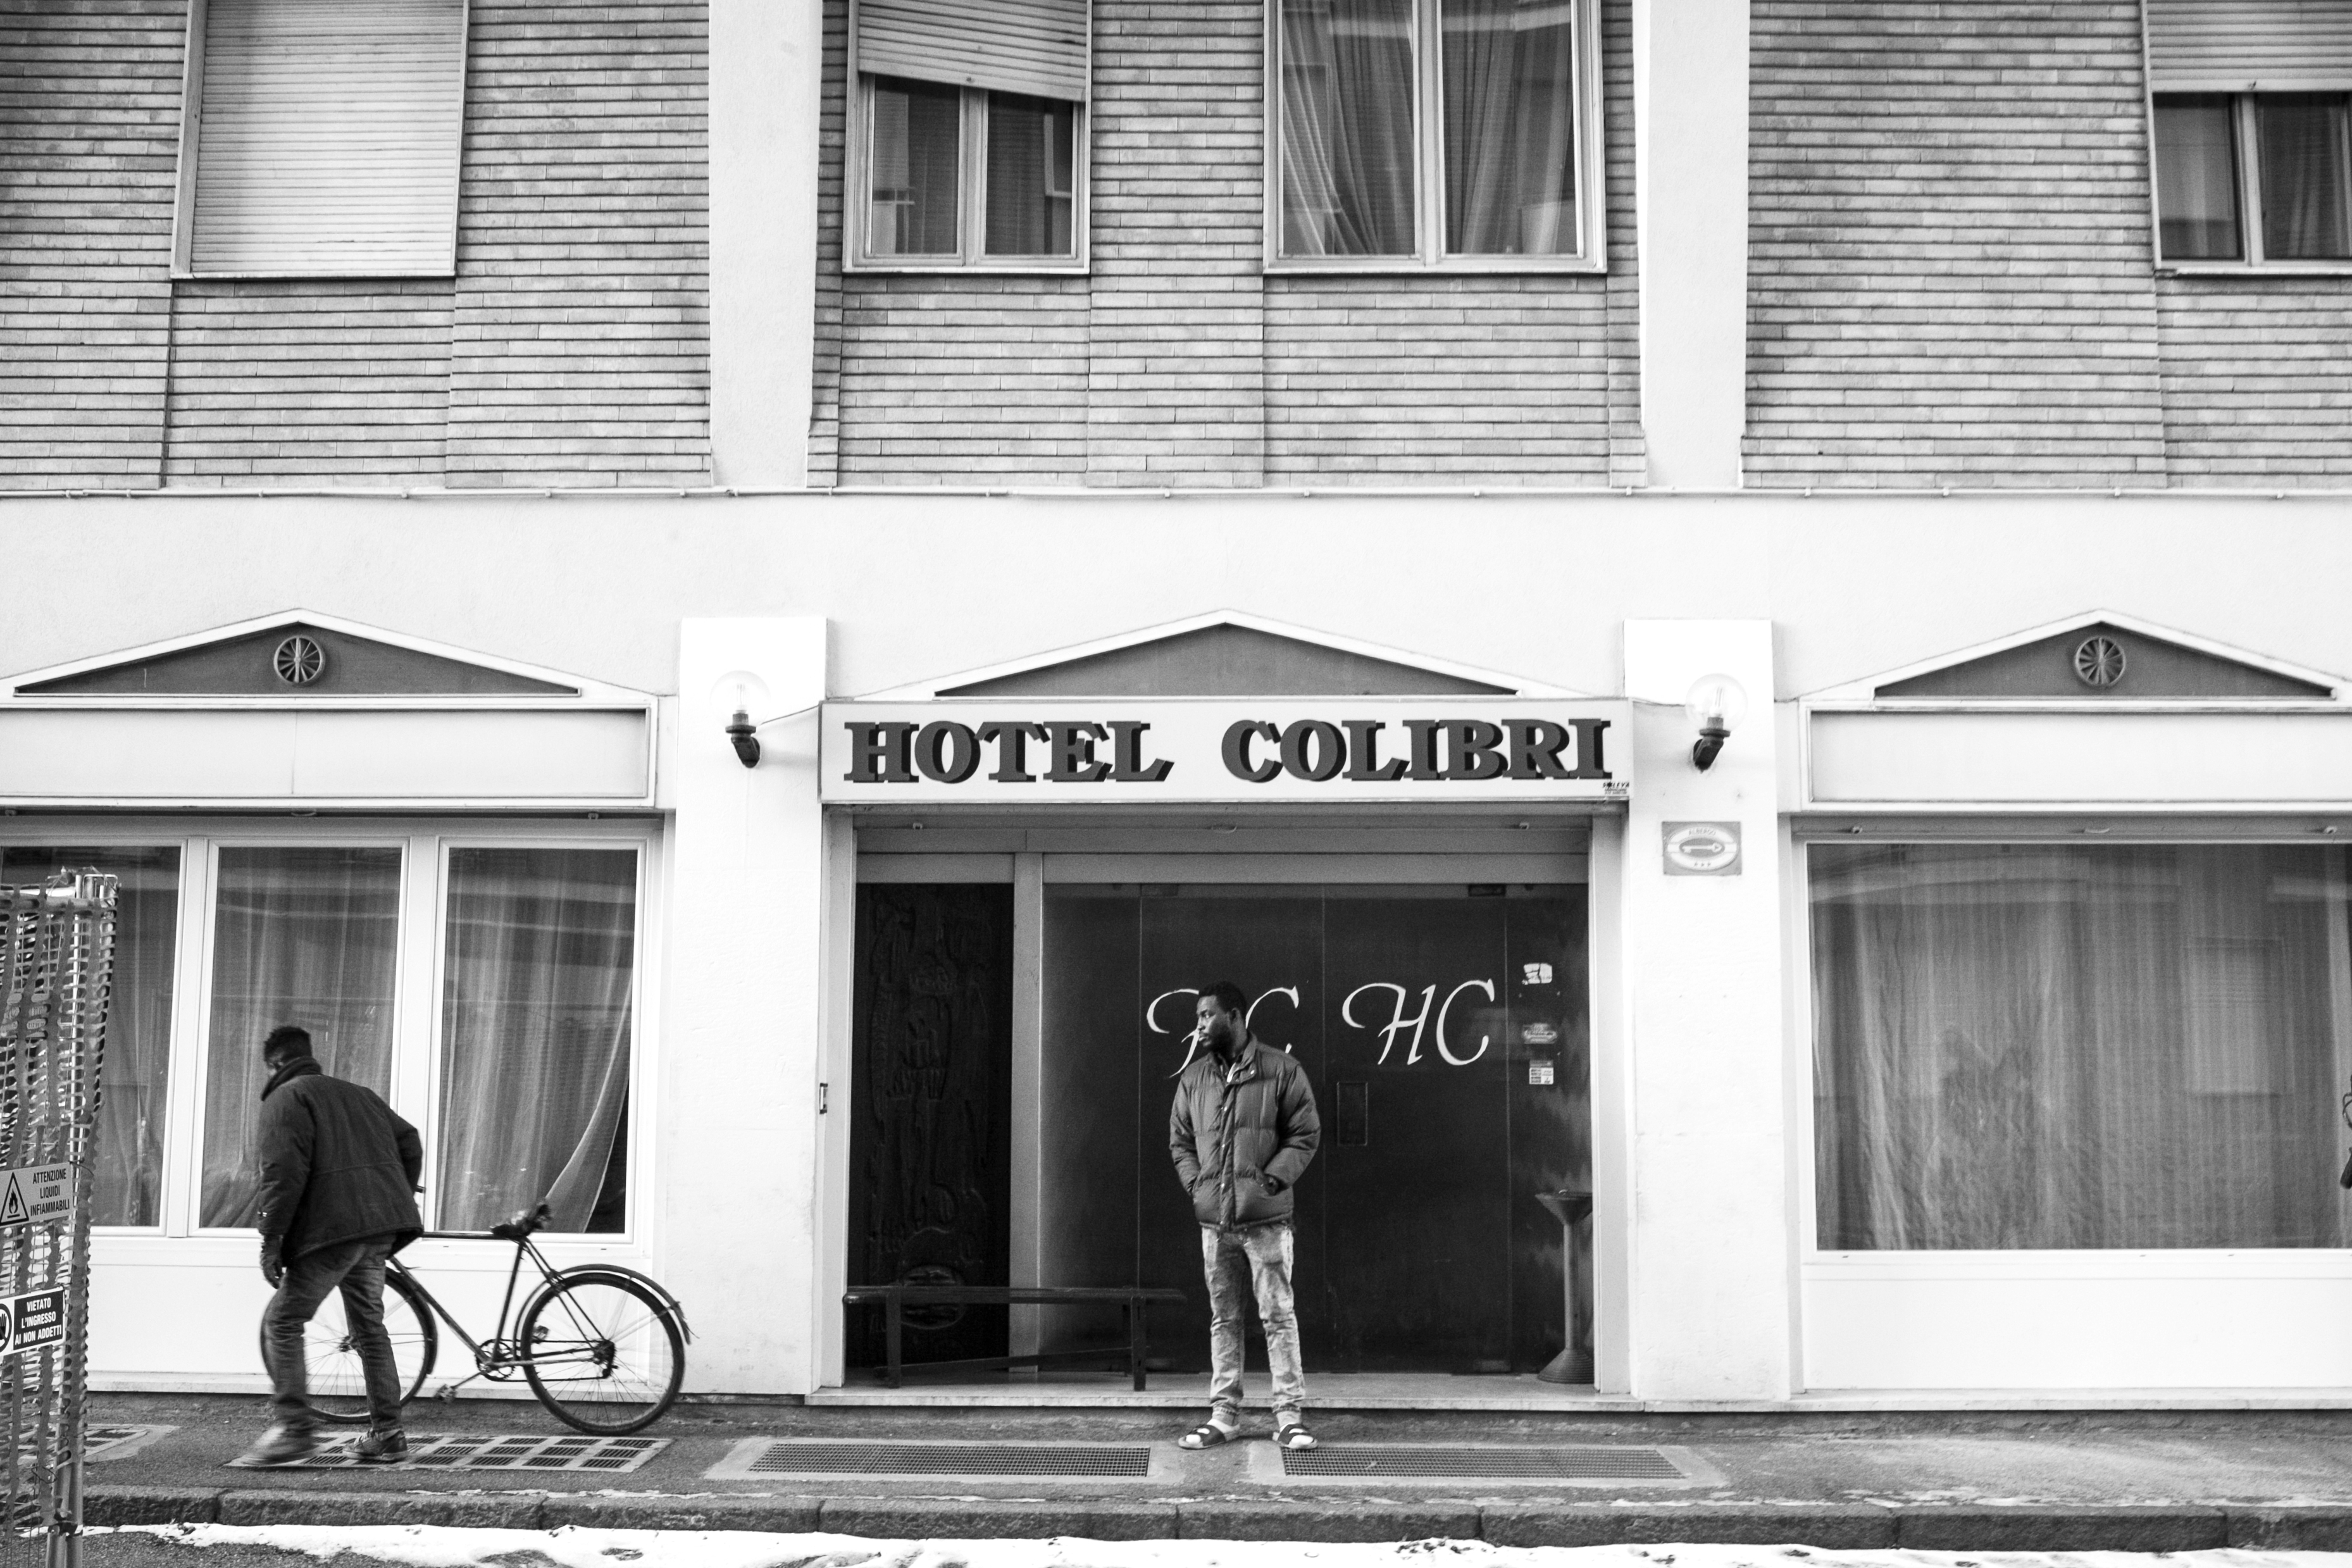 Entrance of Hotel Colibri, the closed hotel-turned-temporary reception centre in Biella where Malick lives. (Photo: César Dezfuli)